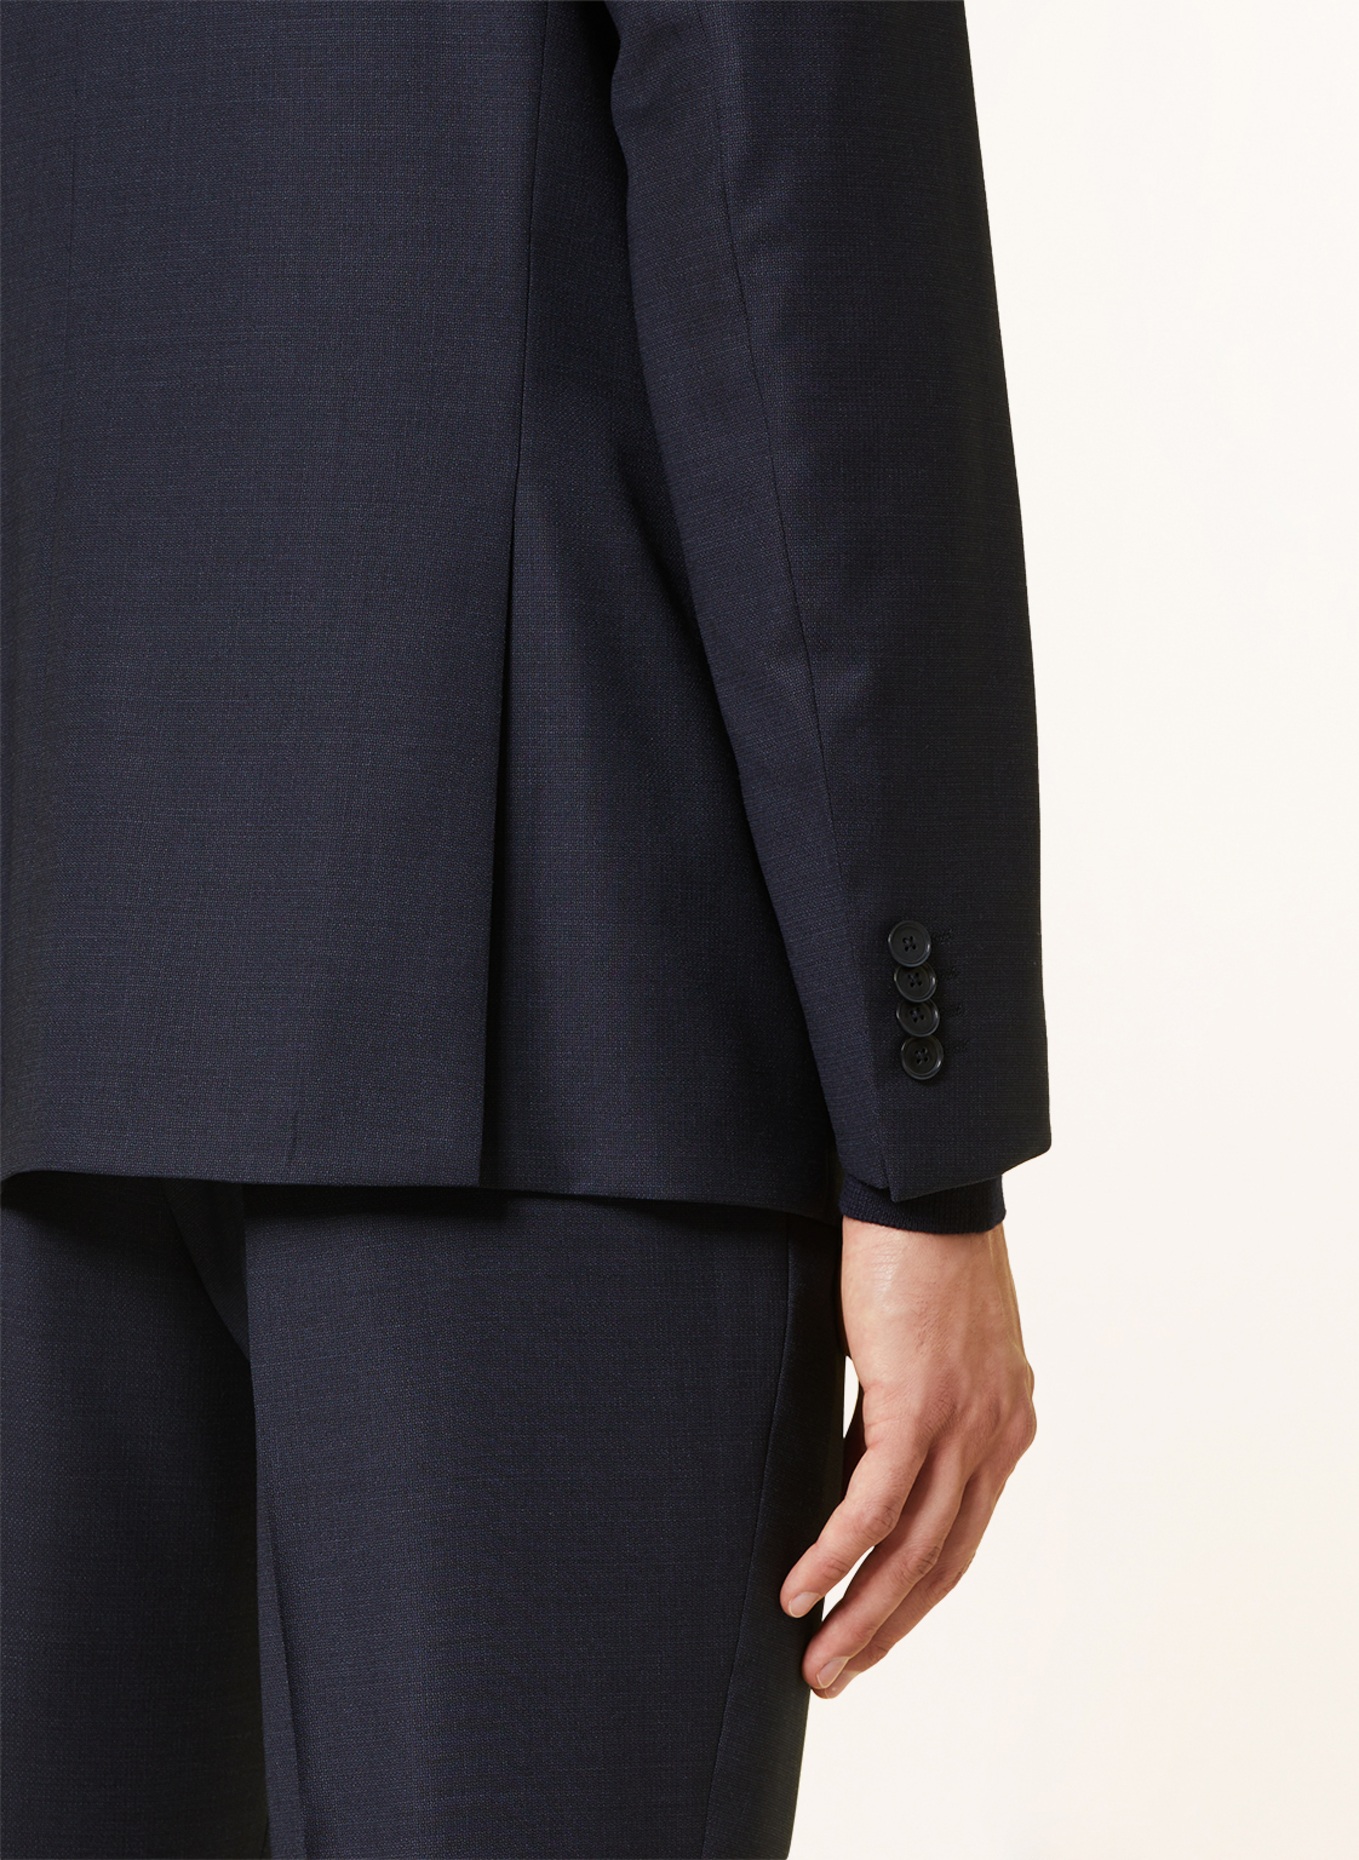 DIGEL Suit jacket DUNCAN modern fit, Color: 22 BLAU (Image 6)